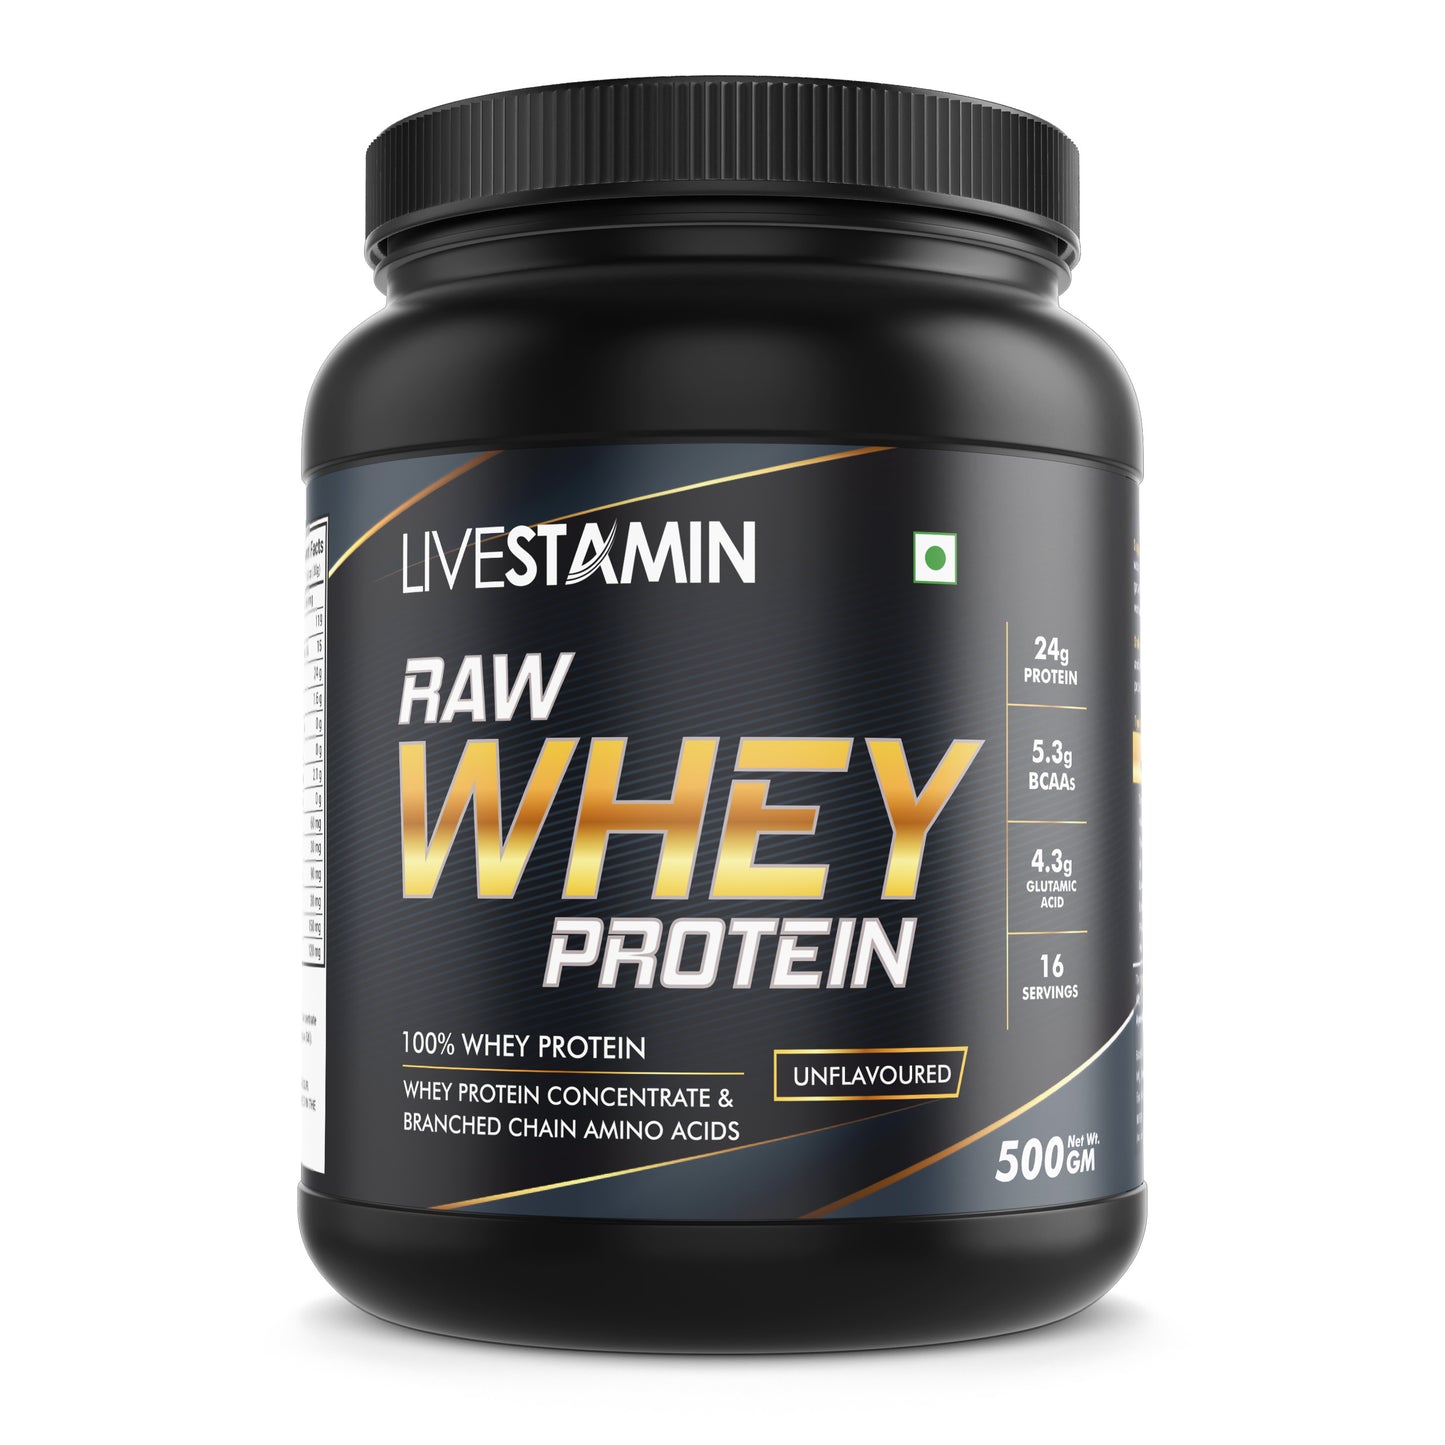 Raw Whey Protein Powder